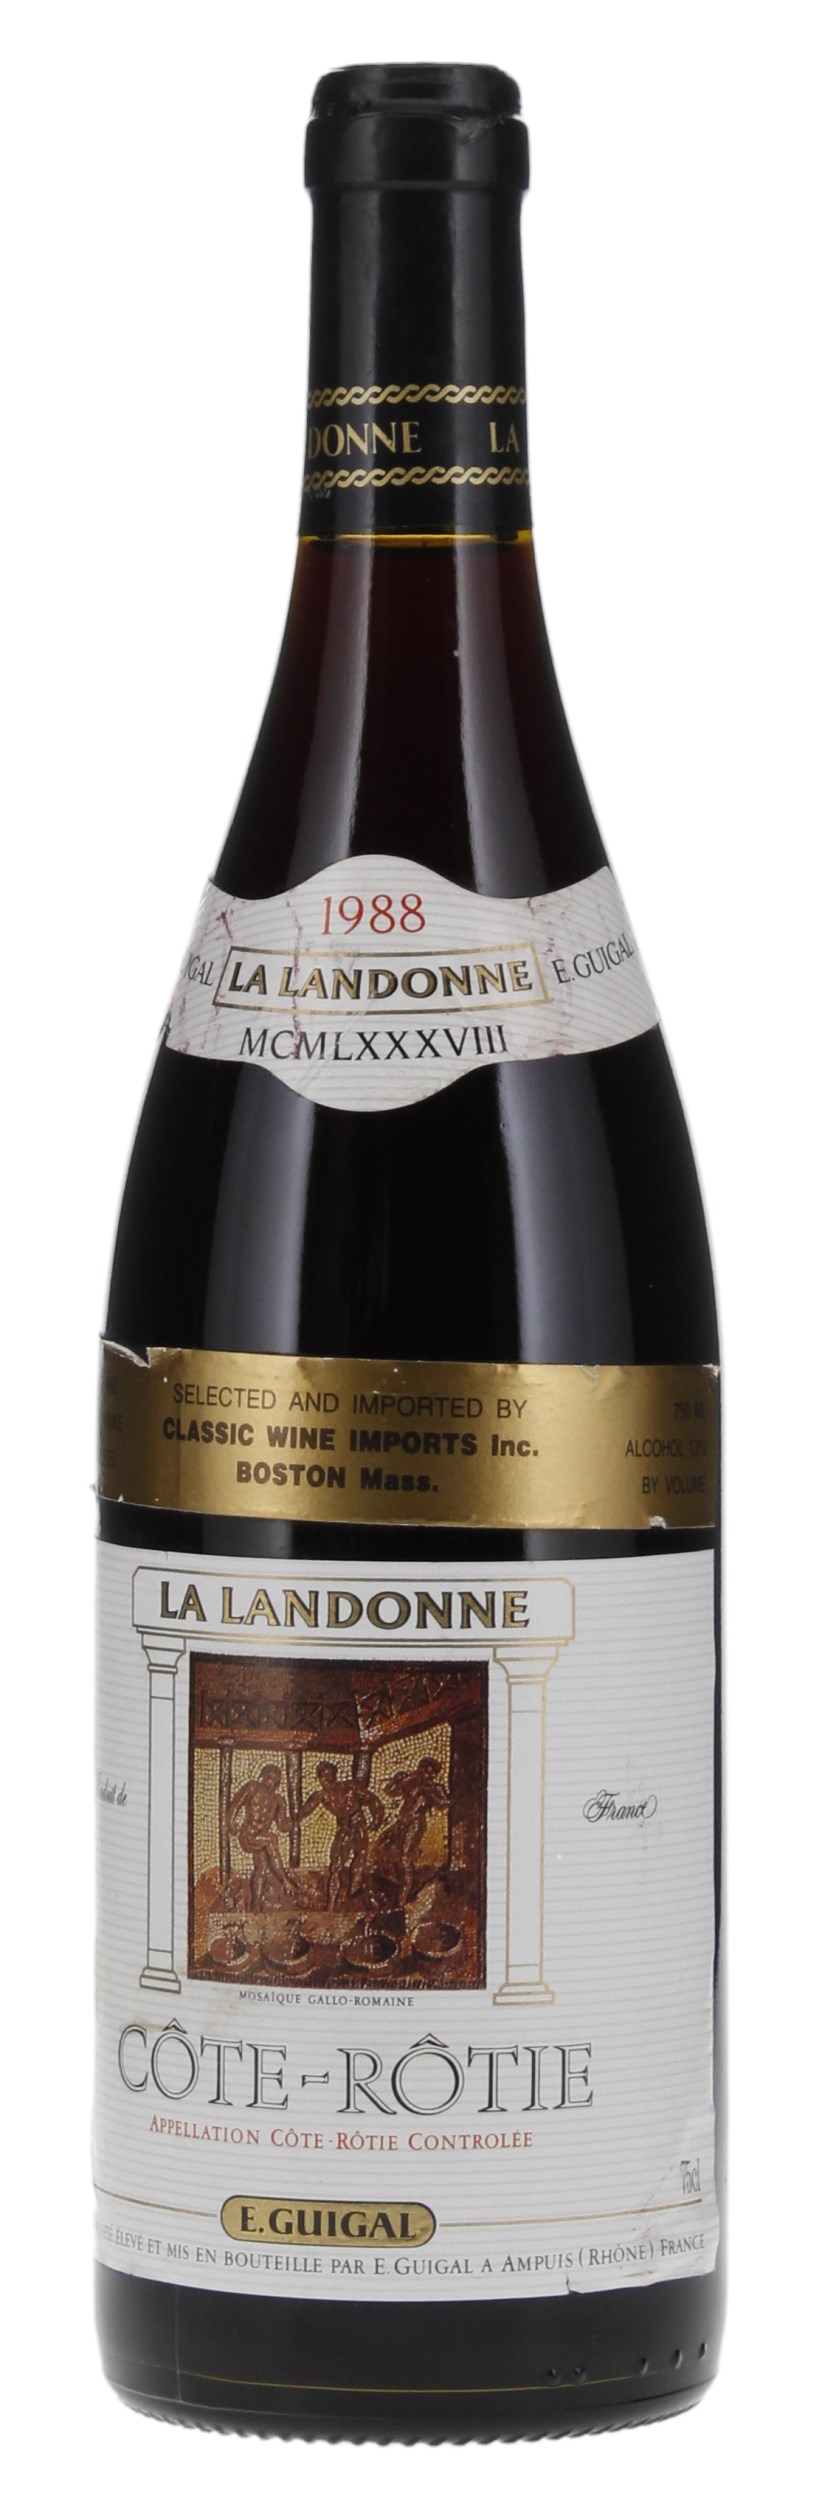 1988 E. Guigal Côte-Rôtie La Landonne, 750ml